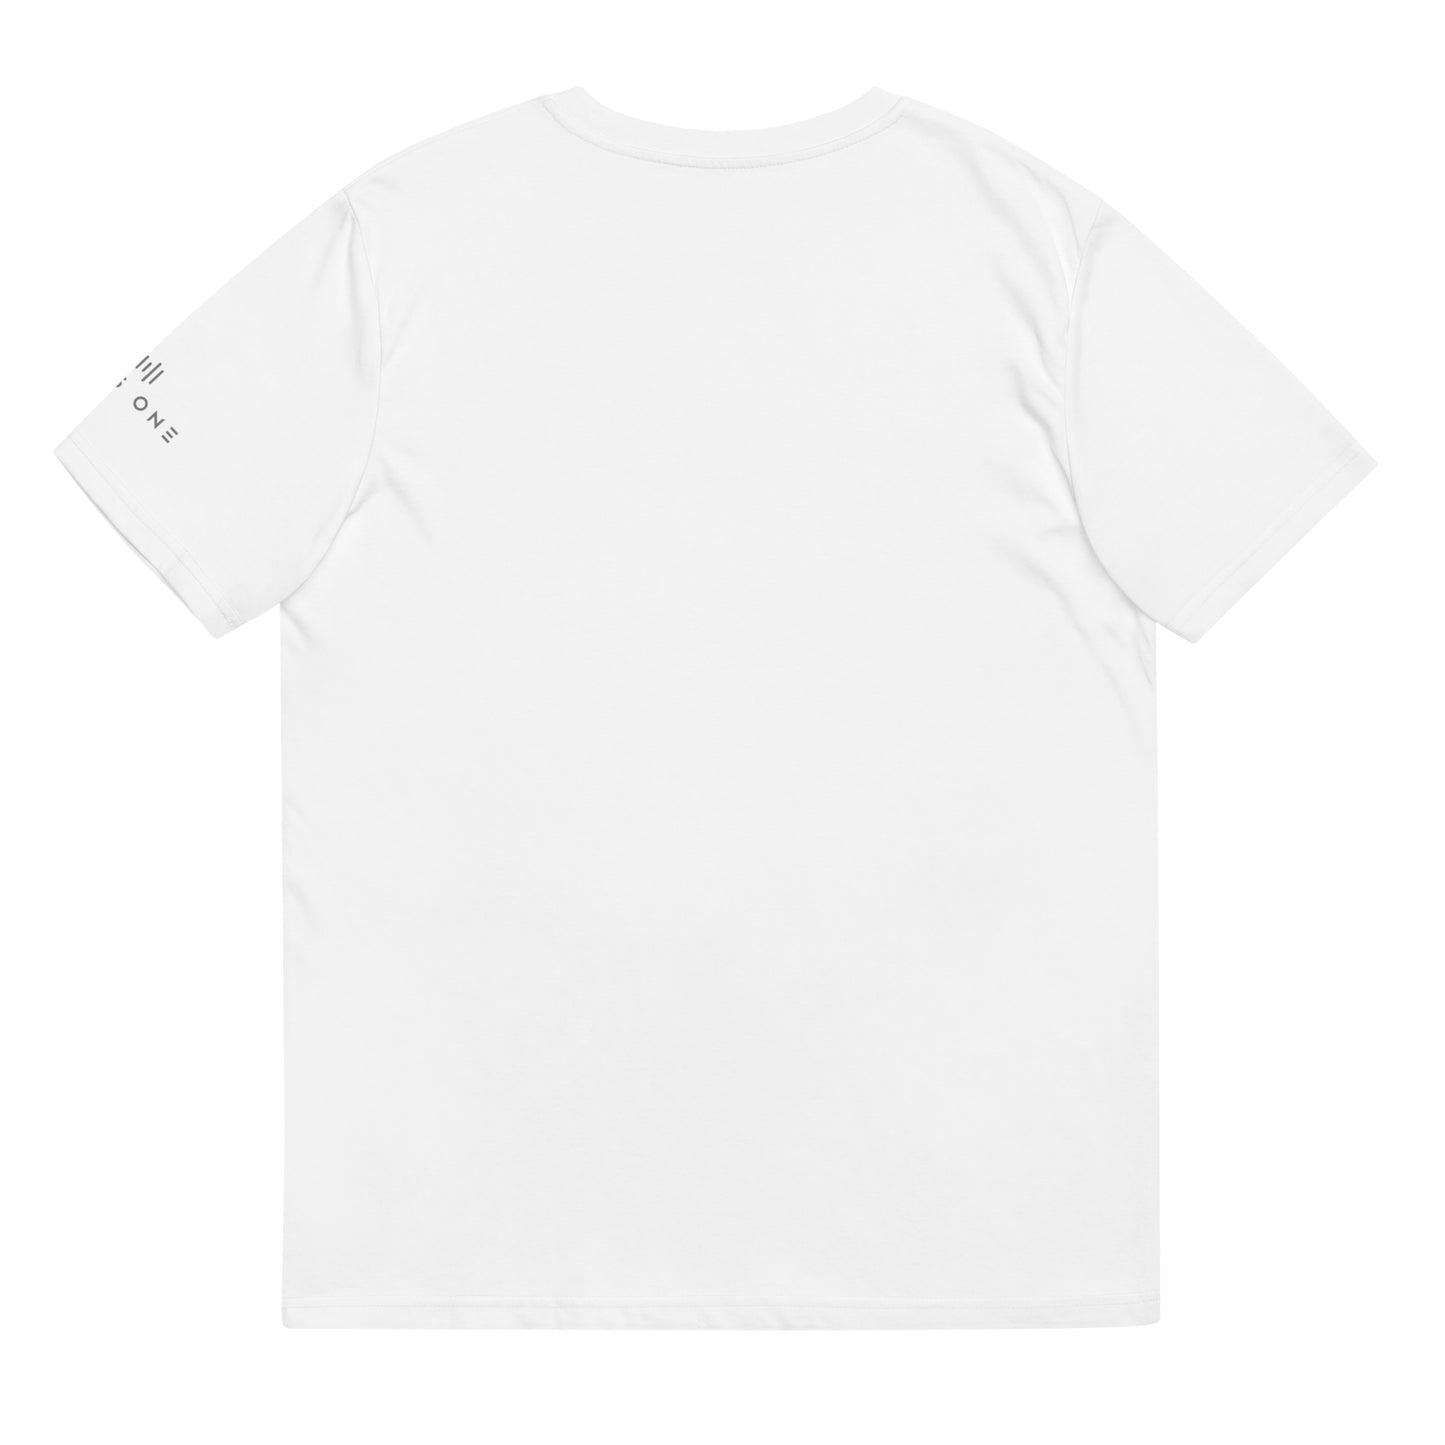 Tribe Mic-e (v4) Unisex organic cotton t-shirt